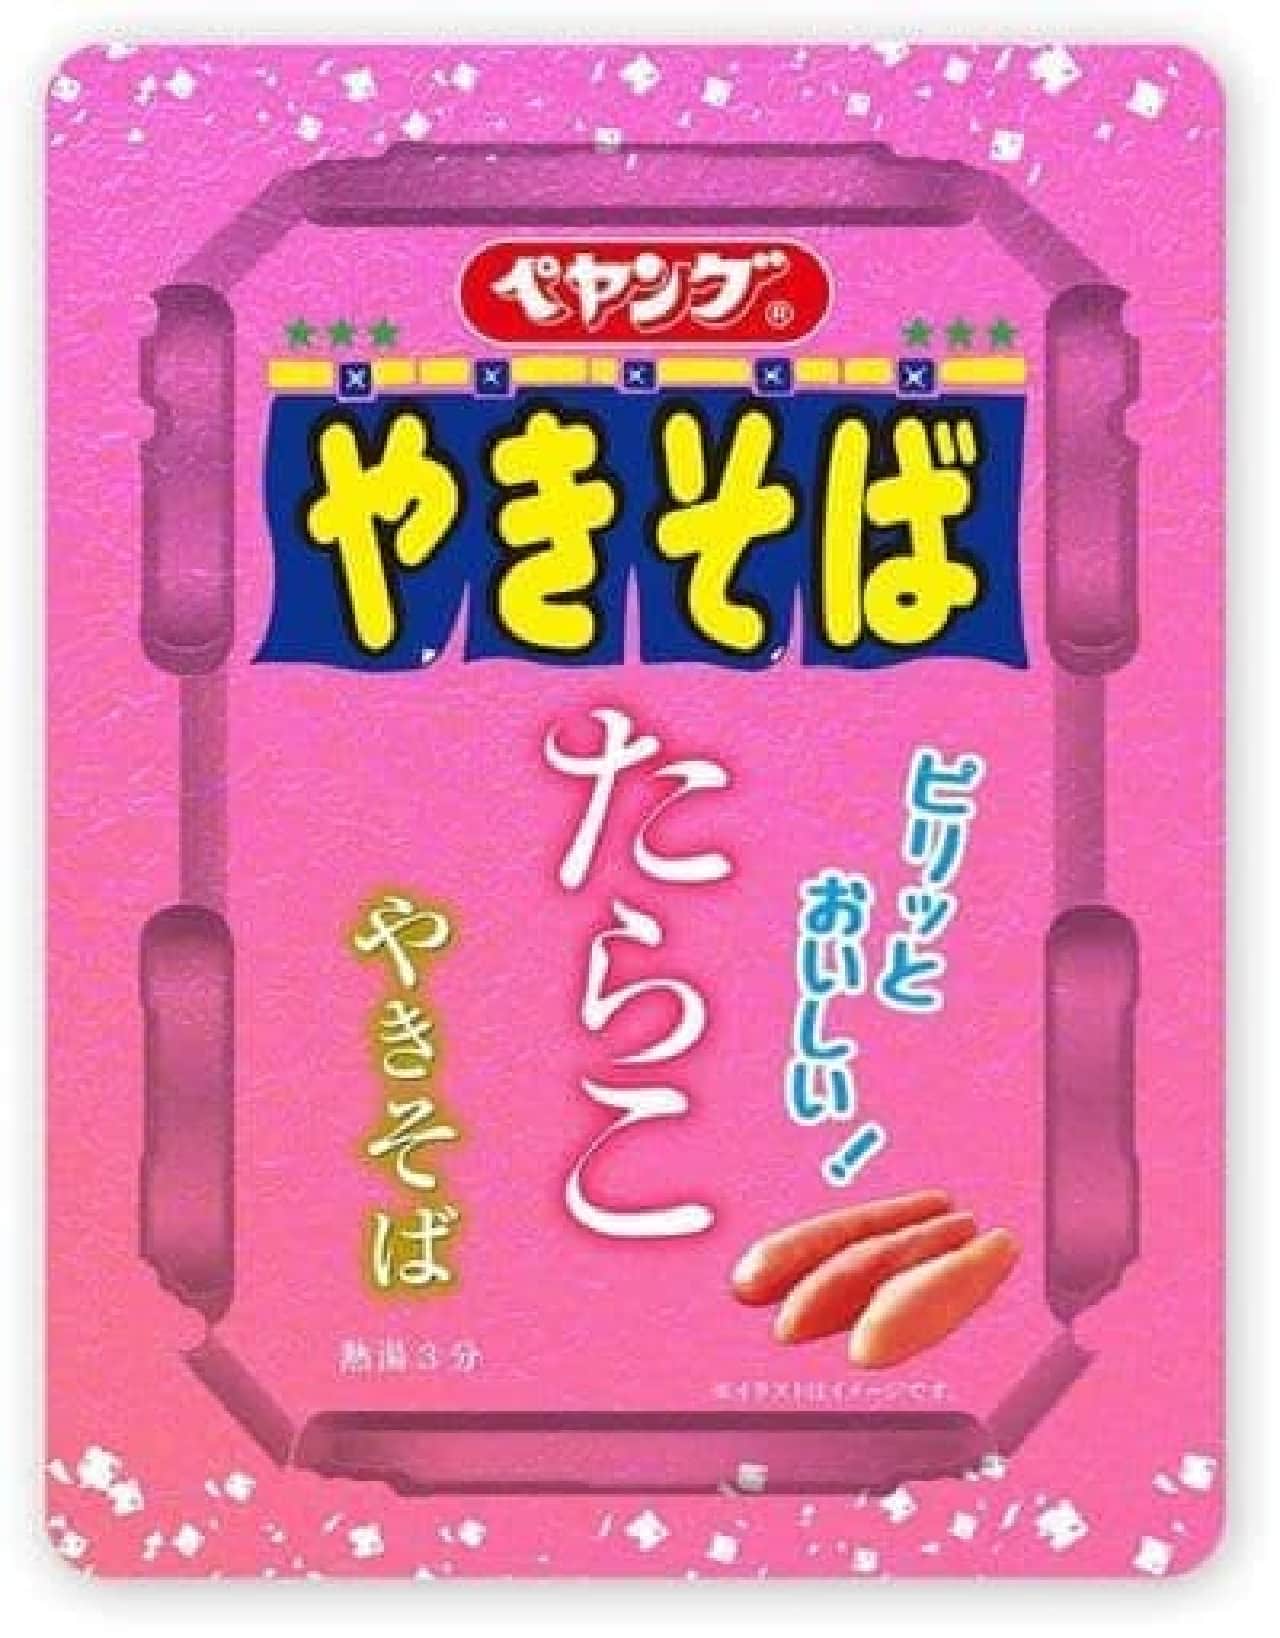 Maruka Foods "Peyoung Tarakoyakisoba"